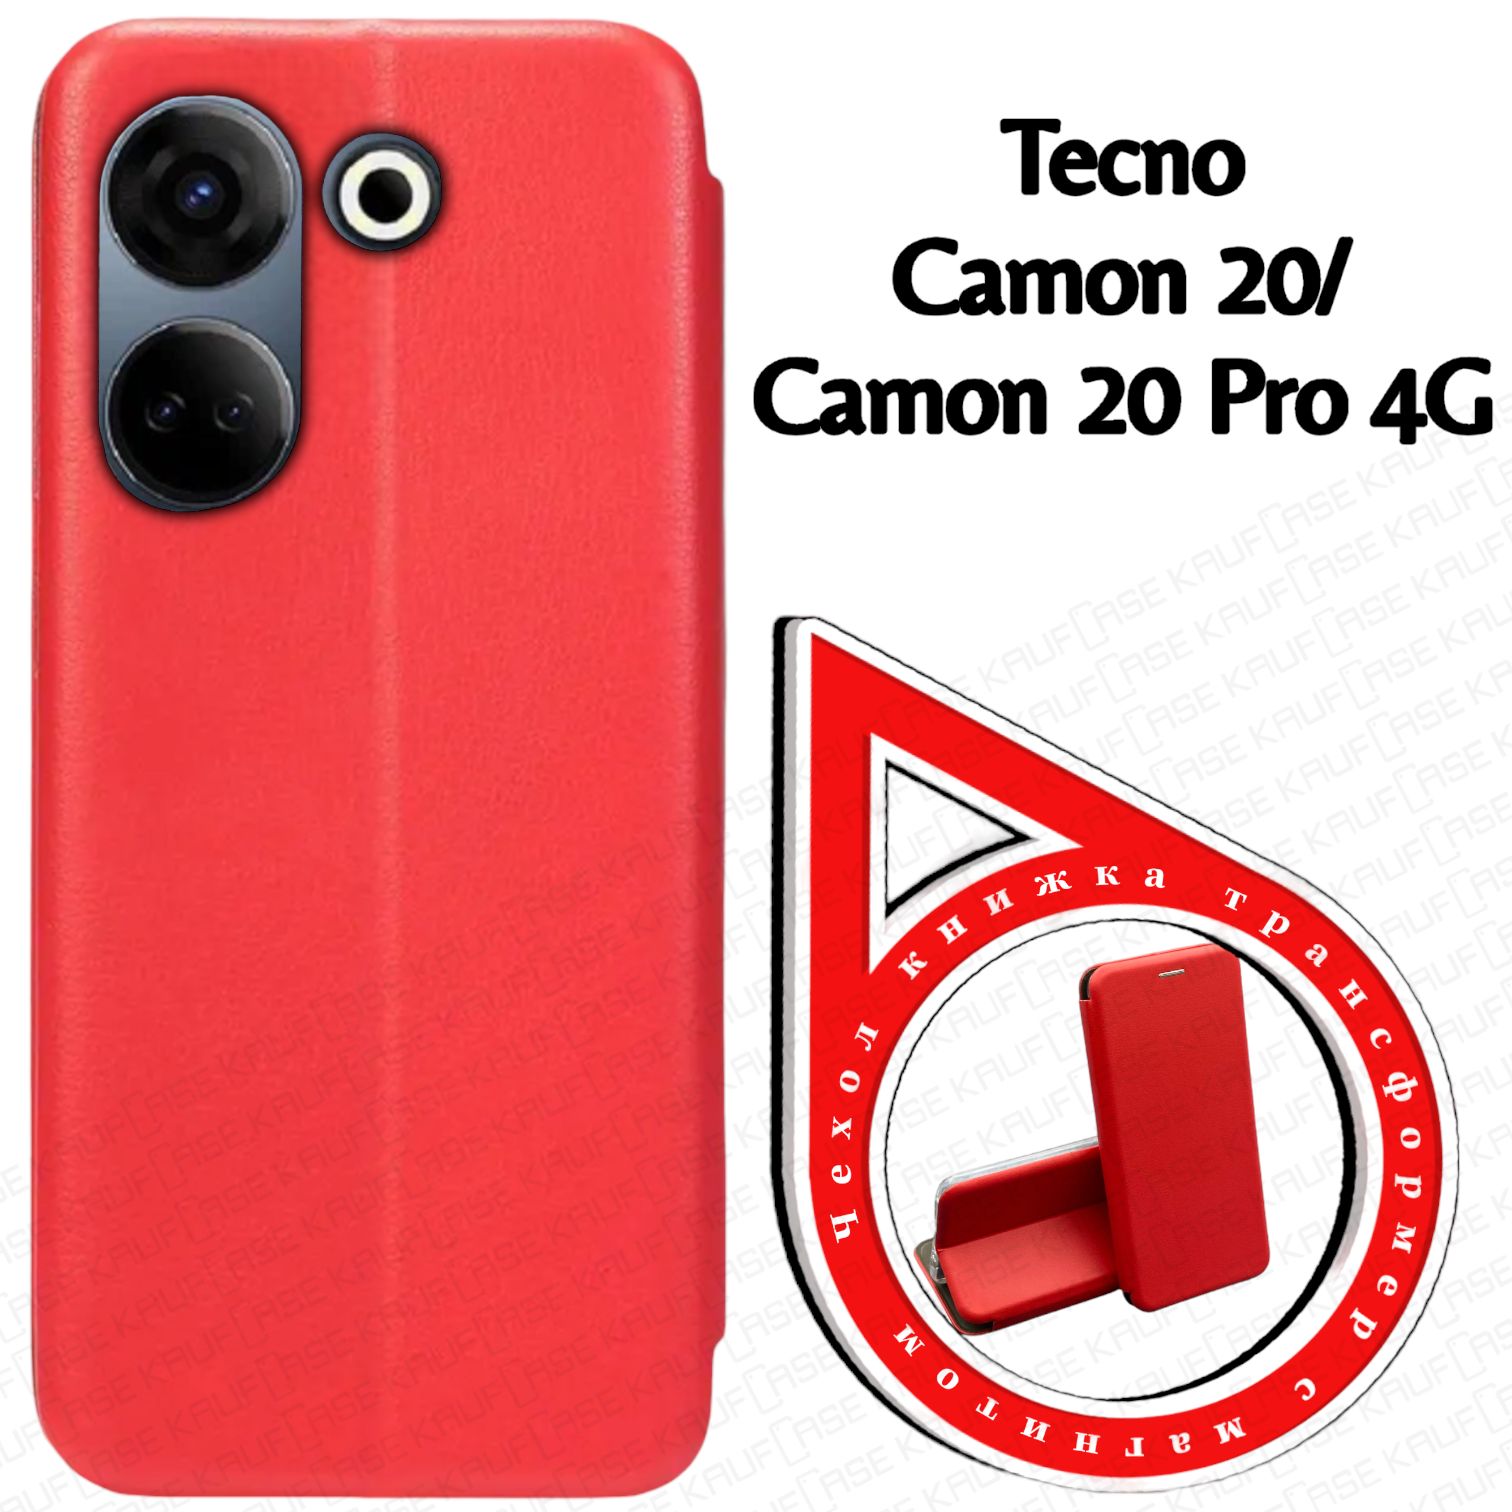 ЧехолкнижкадлятелефонаTecnoCamon20/Camon20Pro4G(CK6,CK7n)(6.67"),красный.Трансфомер